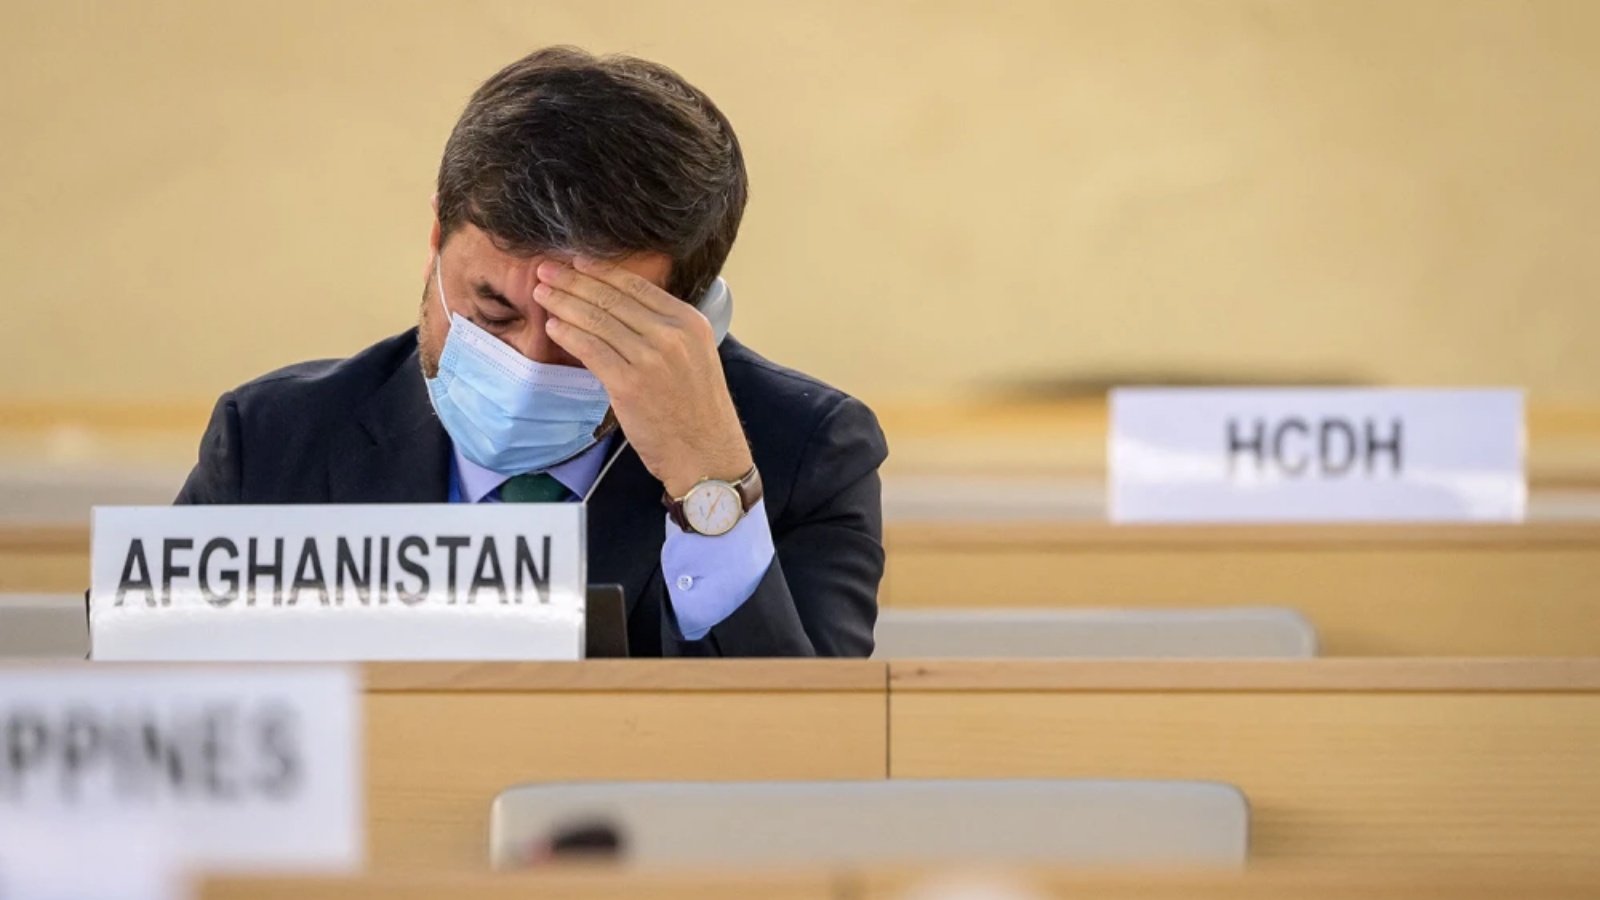 السفير الأفغاني ناصر أنديشا يحضر جلسة خاصة لمجلس حقوق الإنسان التابع للأمم المتحدة بشأن أفغانستان في جنيف في 24 أغسطس 2021.